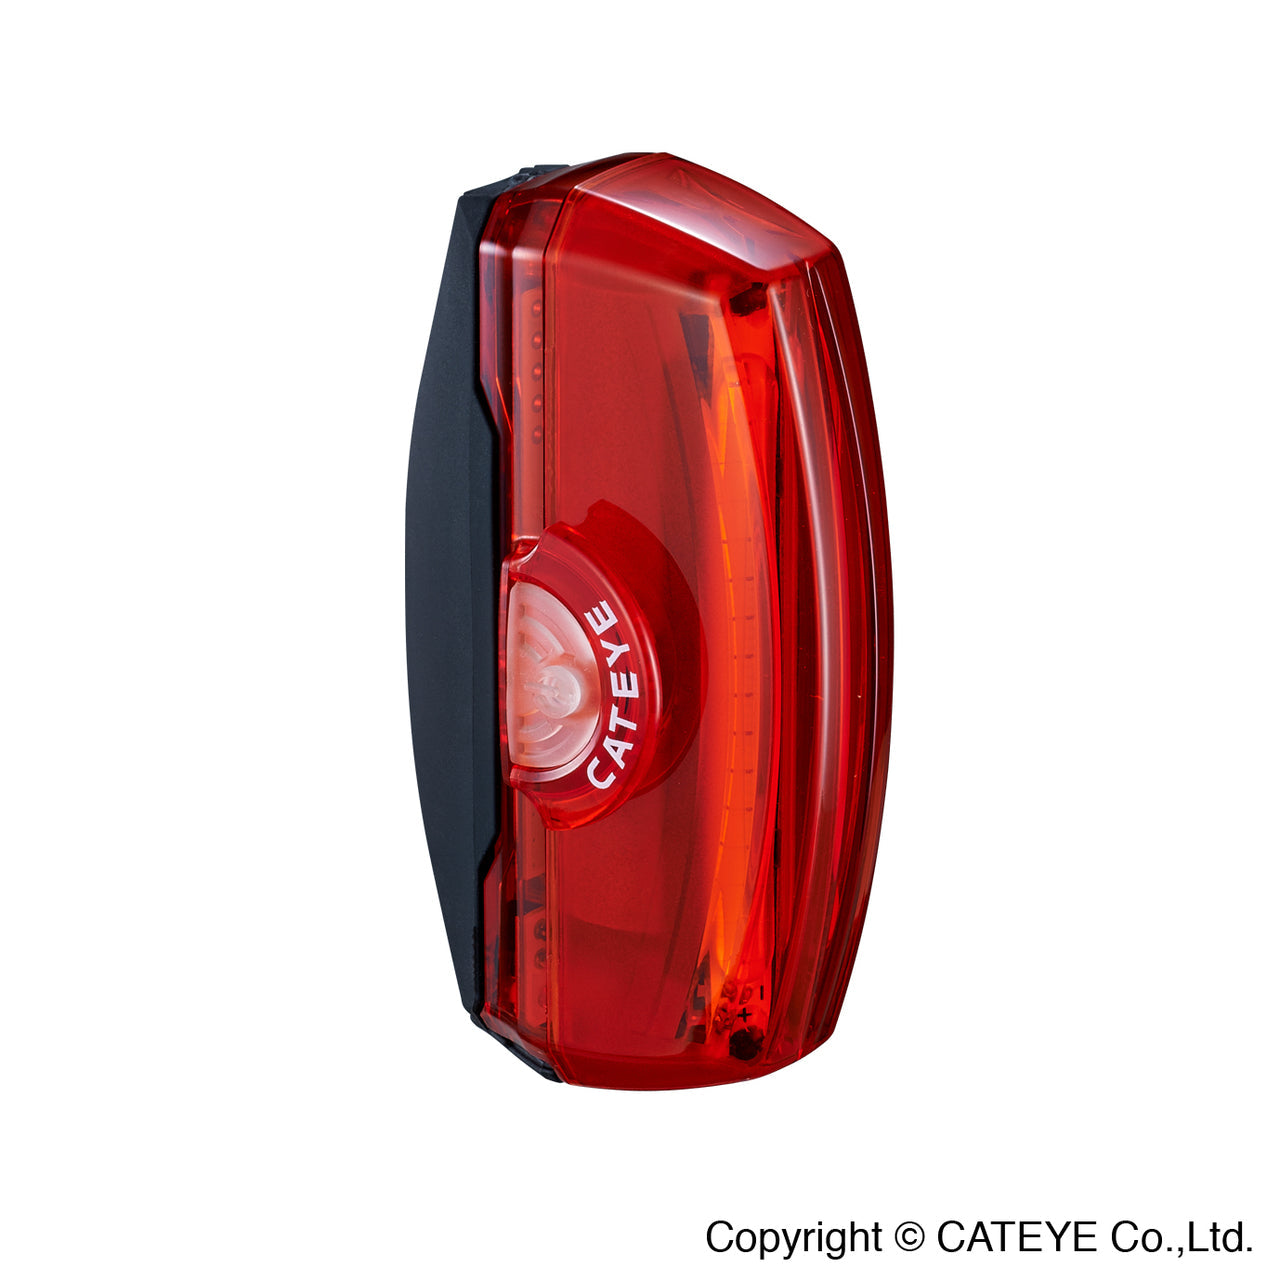 CATEYE RAPID X3 USB TAIL LIGHT~TL-LD720-R / CATEYE RAPID X3 TAIL LIGHT~TL-LD720-R